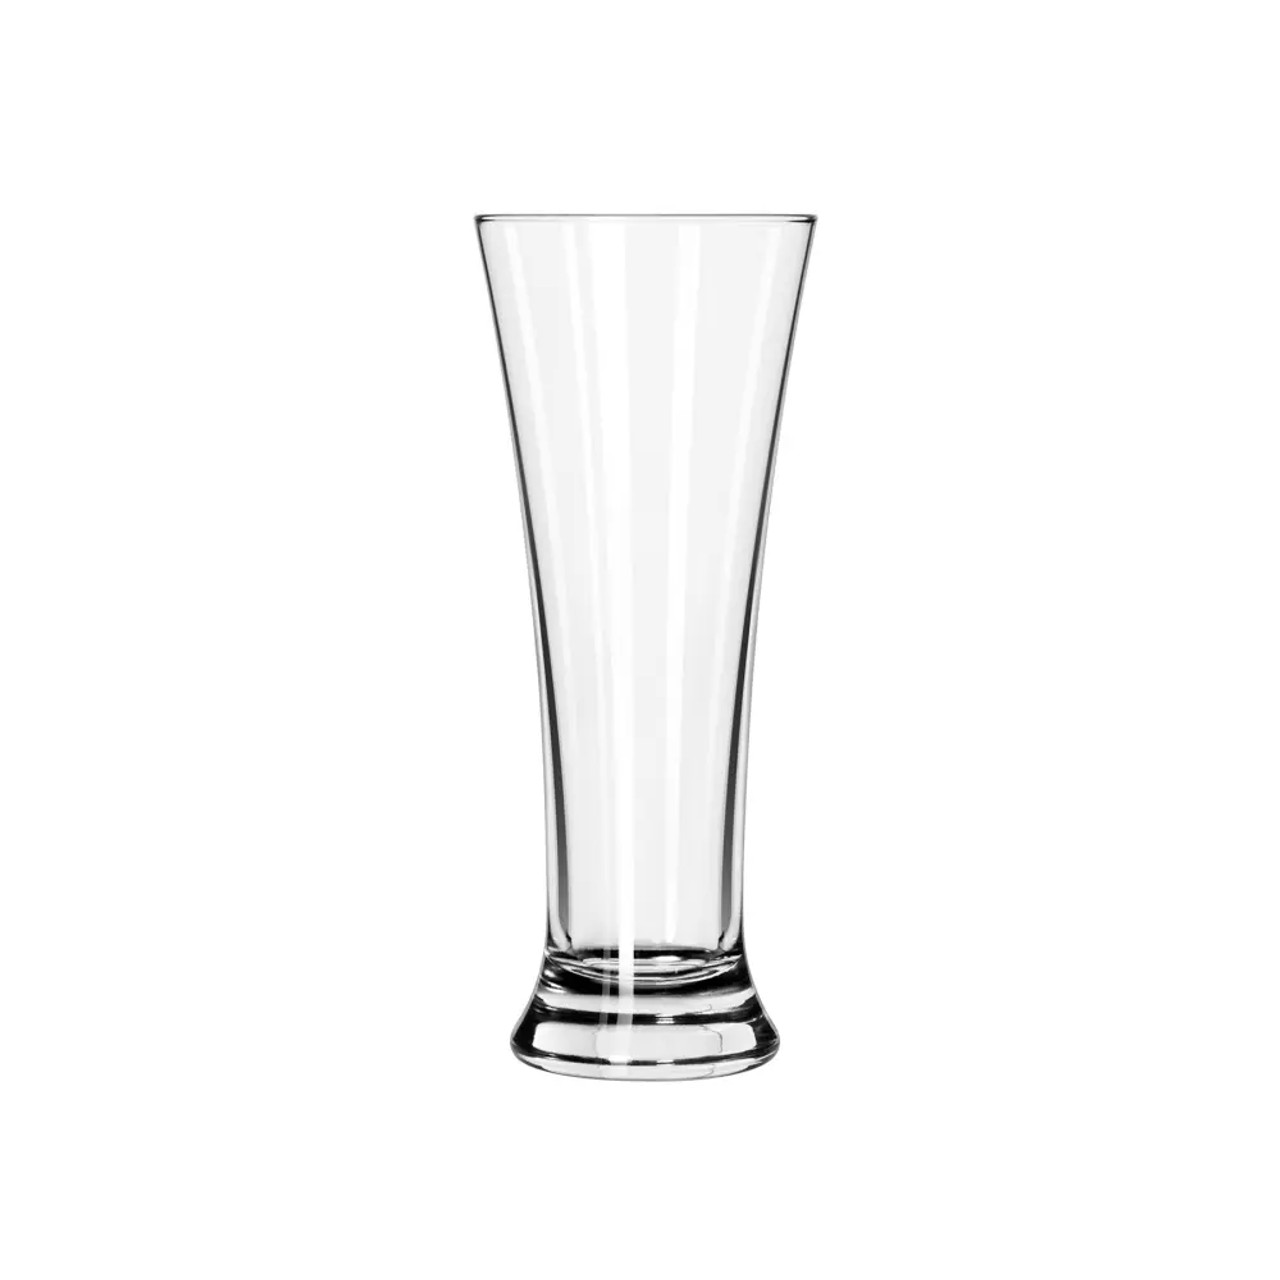 Libbey 247 16 oz Flared Pilsner Glass - Modern Design  (12/Case)